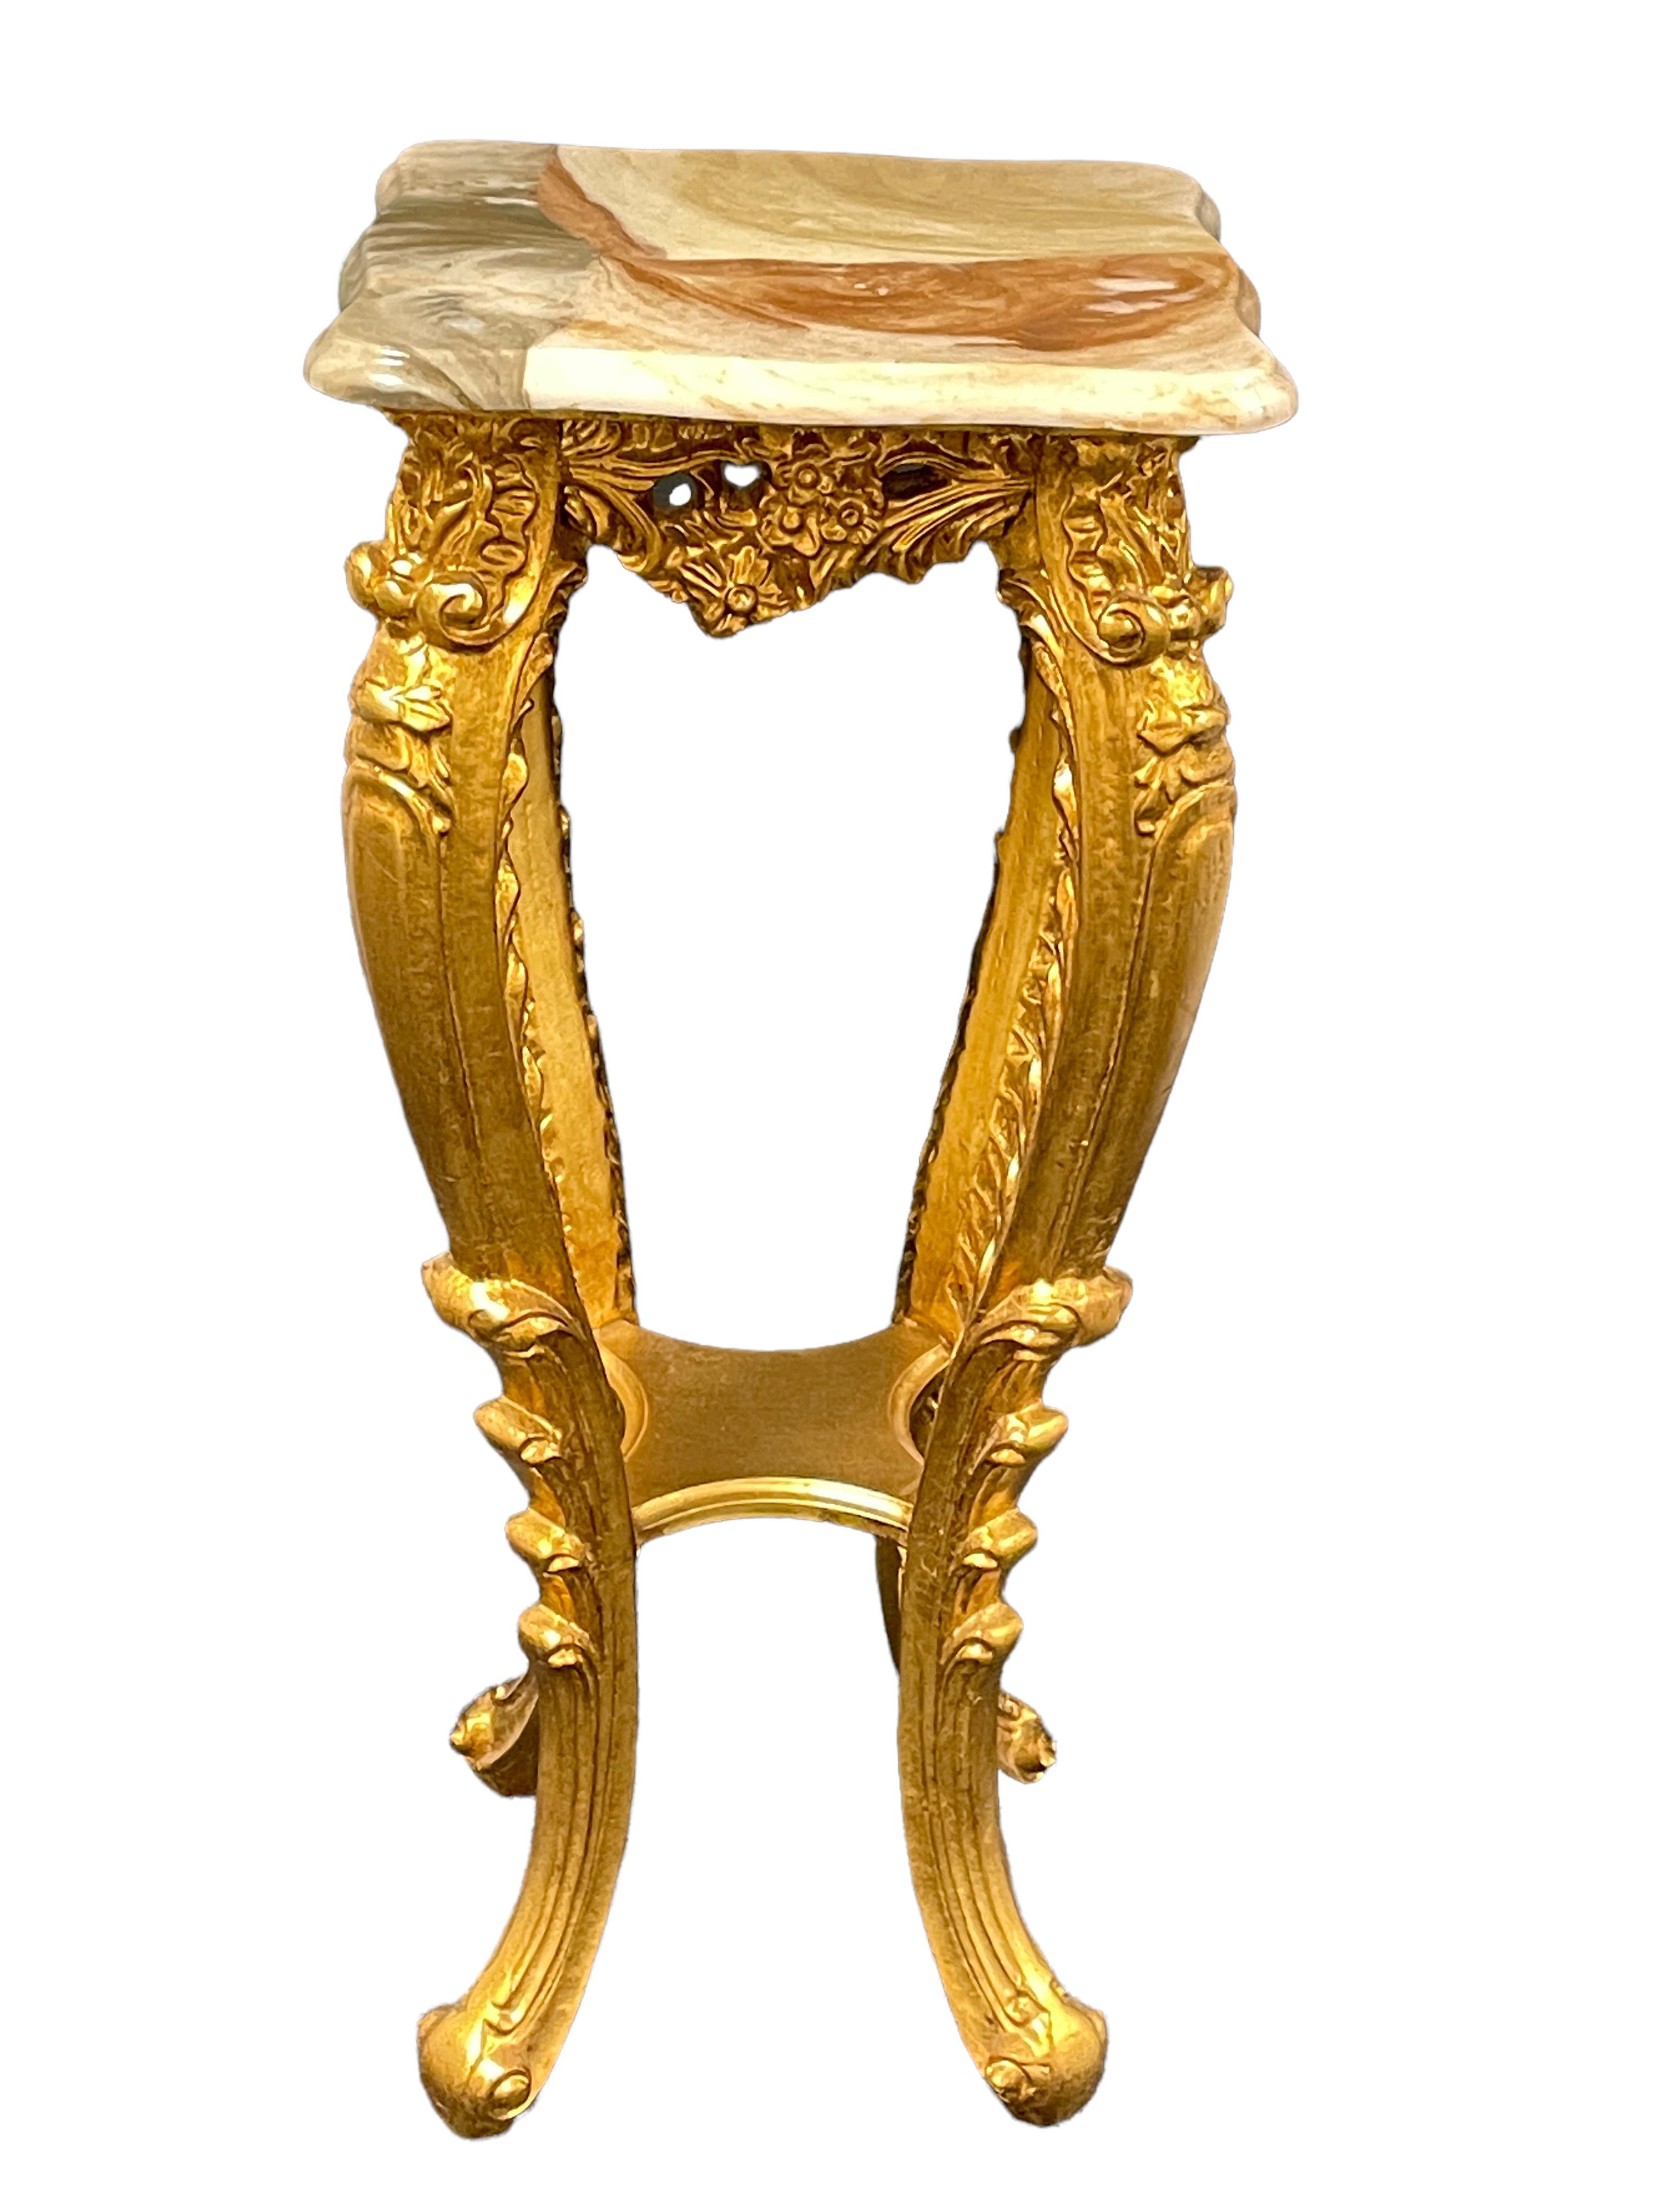 Une console de bonne qualité du 20ème siècle en bois doré, avec un piédestal en marbre, dans le style Hollywood Regency. Elle présente une décoration en bois sculpté et en plâtre sur les pieds et autour du bord, au niveau du bois, sous les plaques